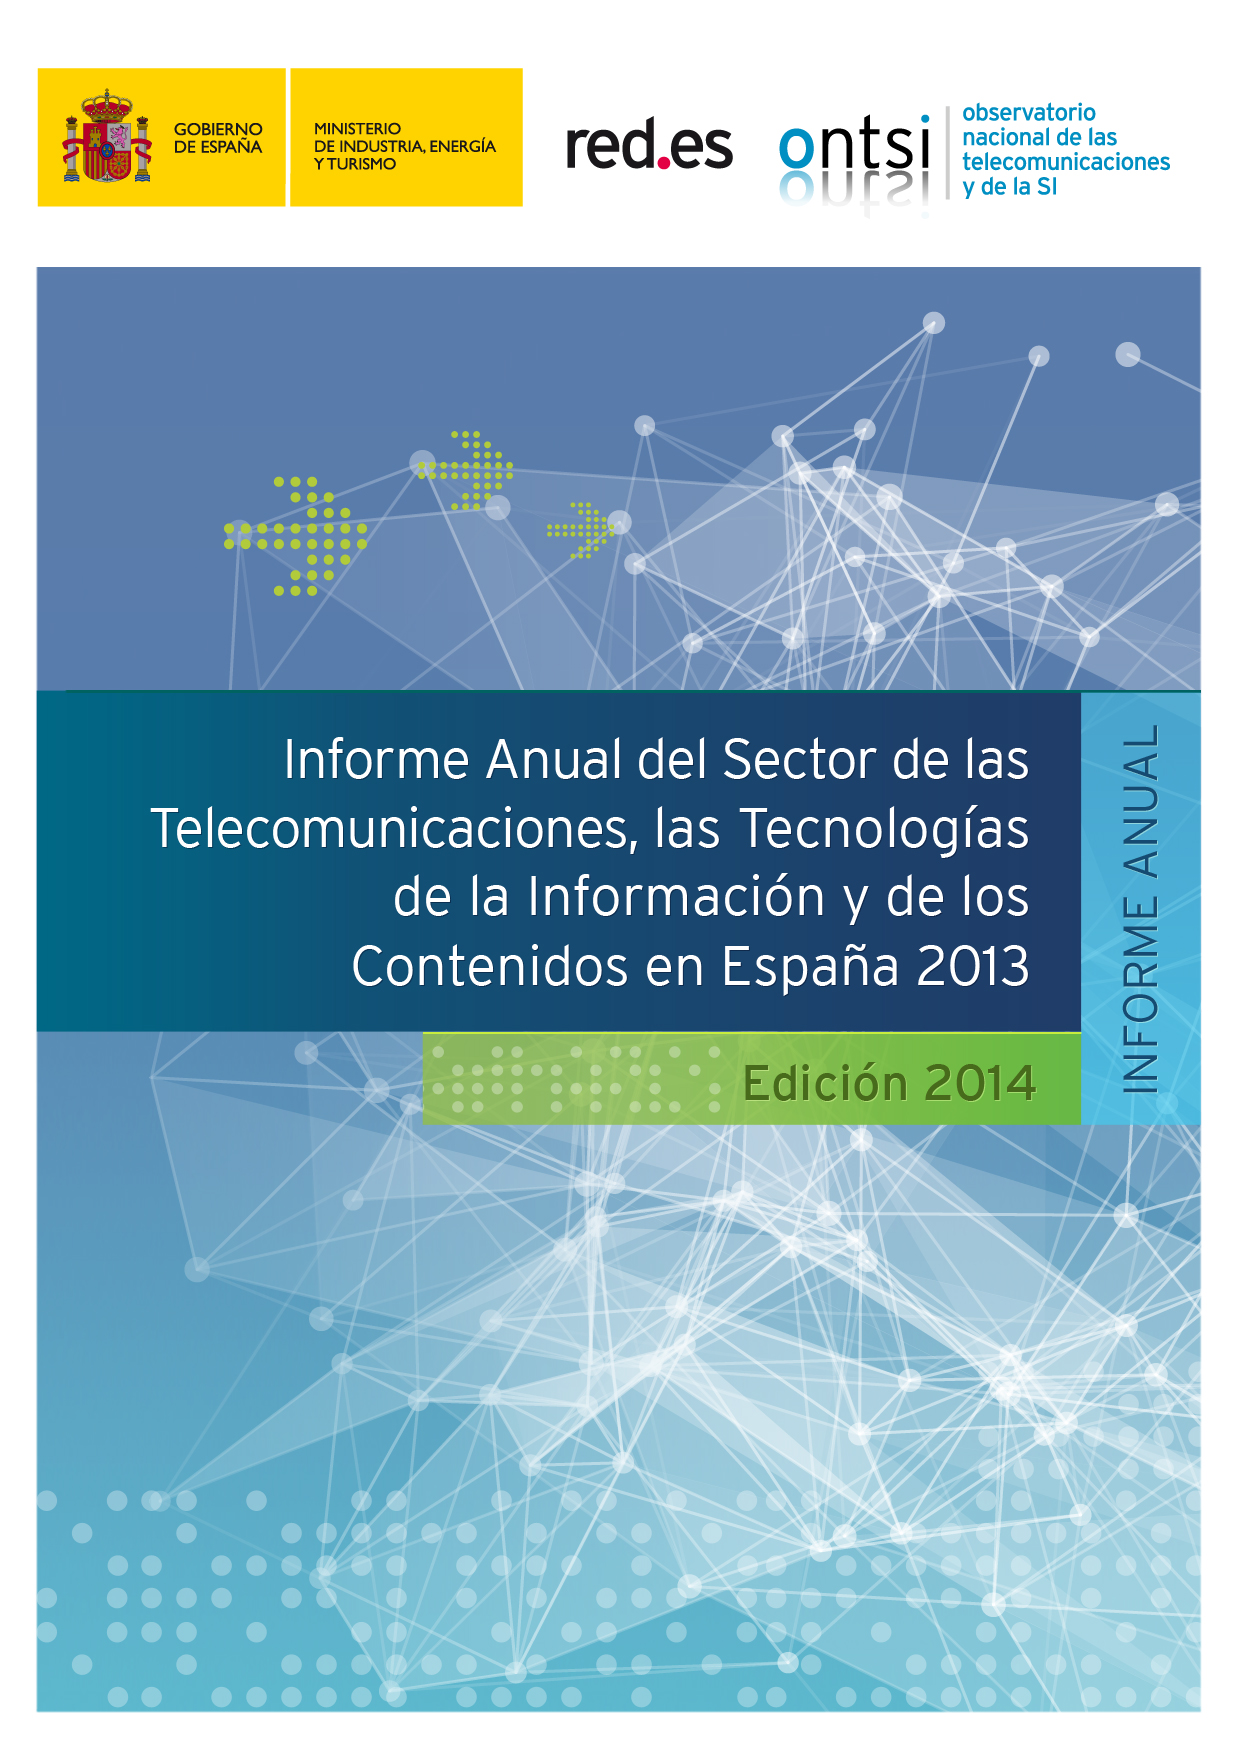 Informe Anual del Sector de las Tecnologías de la información, las Comunicaciones y de los Contenidos en España 2013 Informe Anual